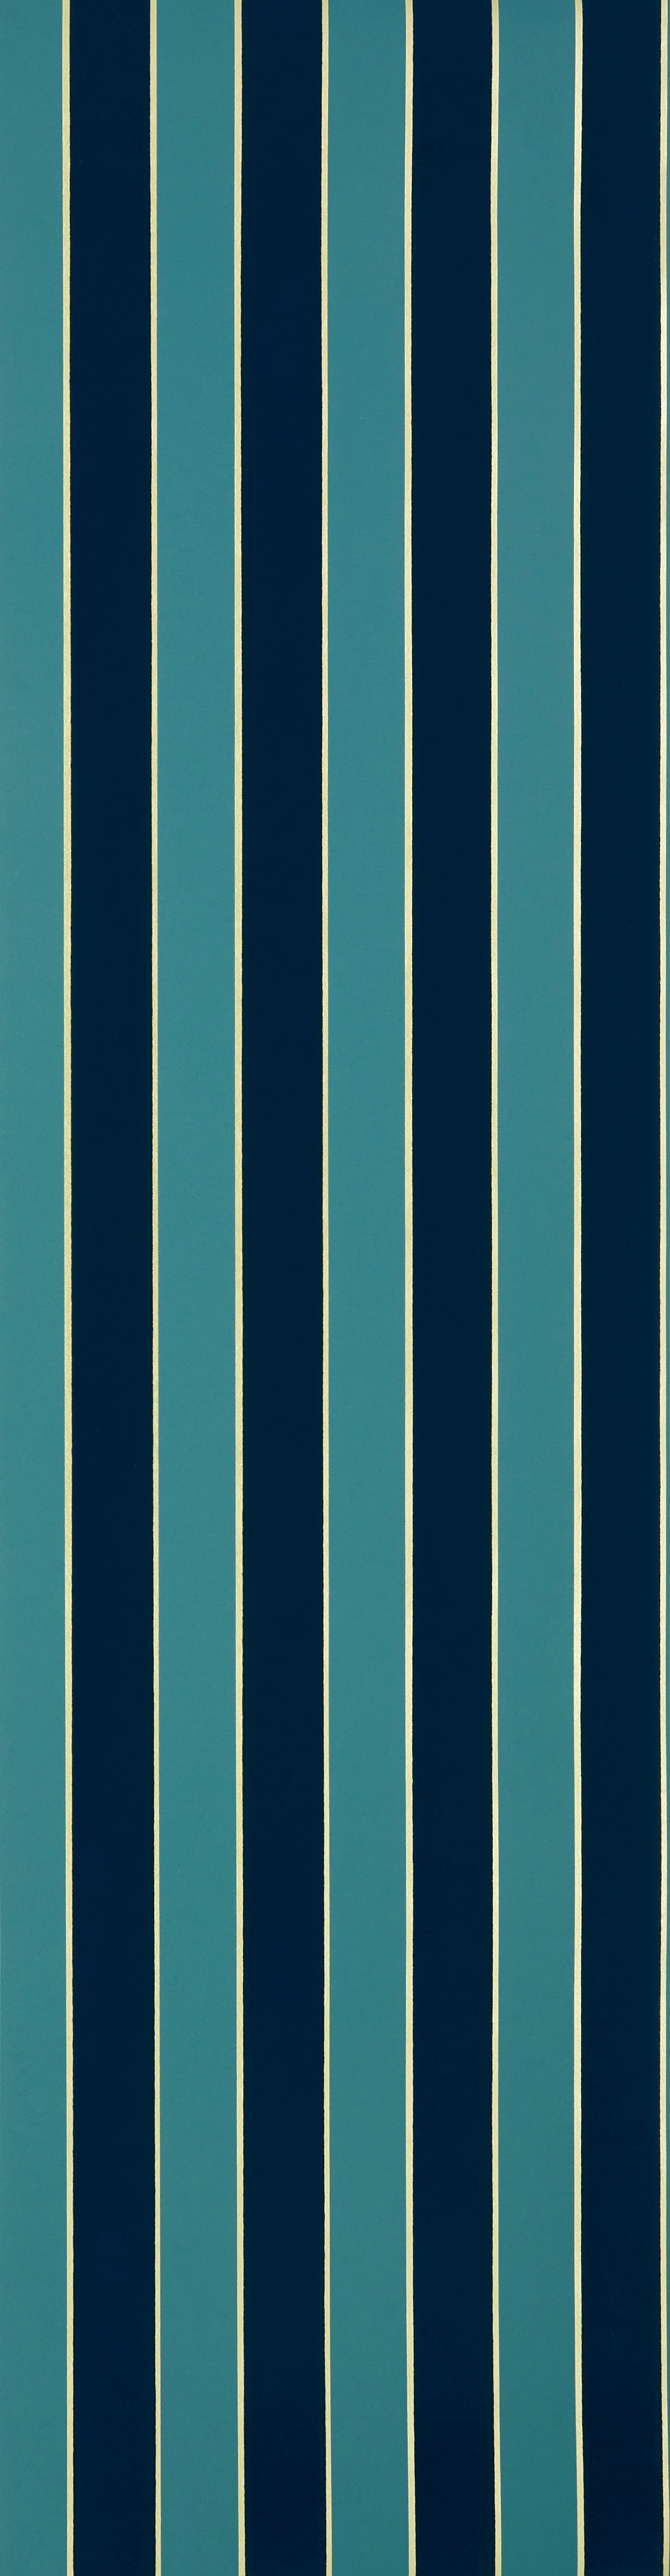 Regency stripe